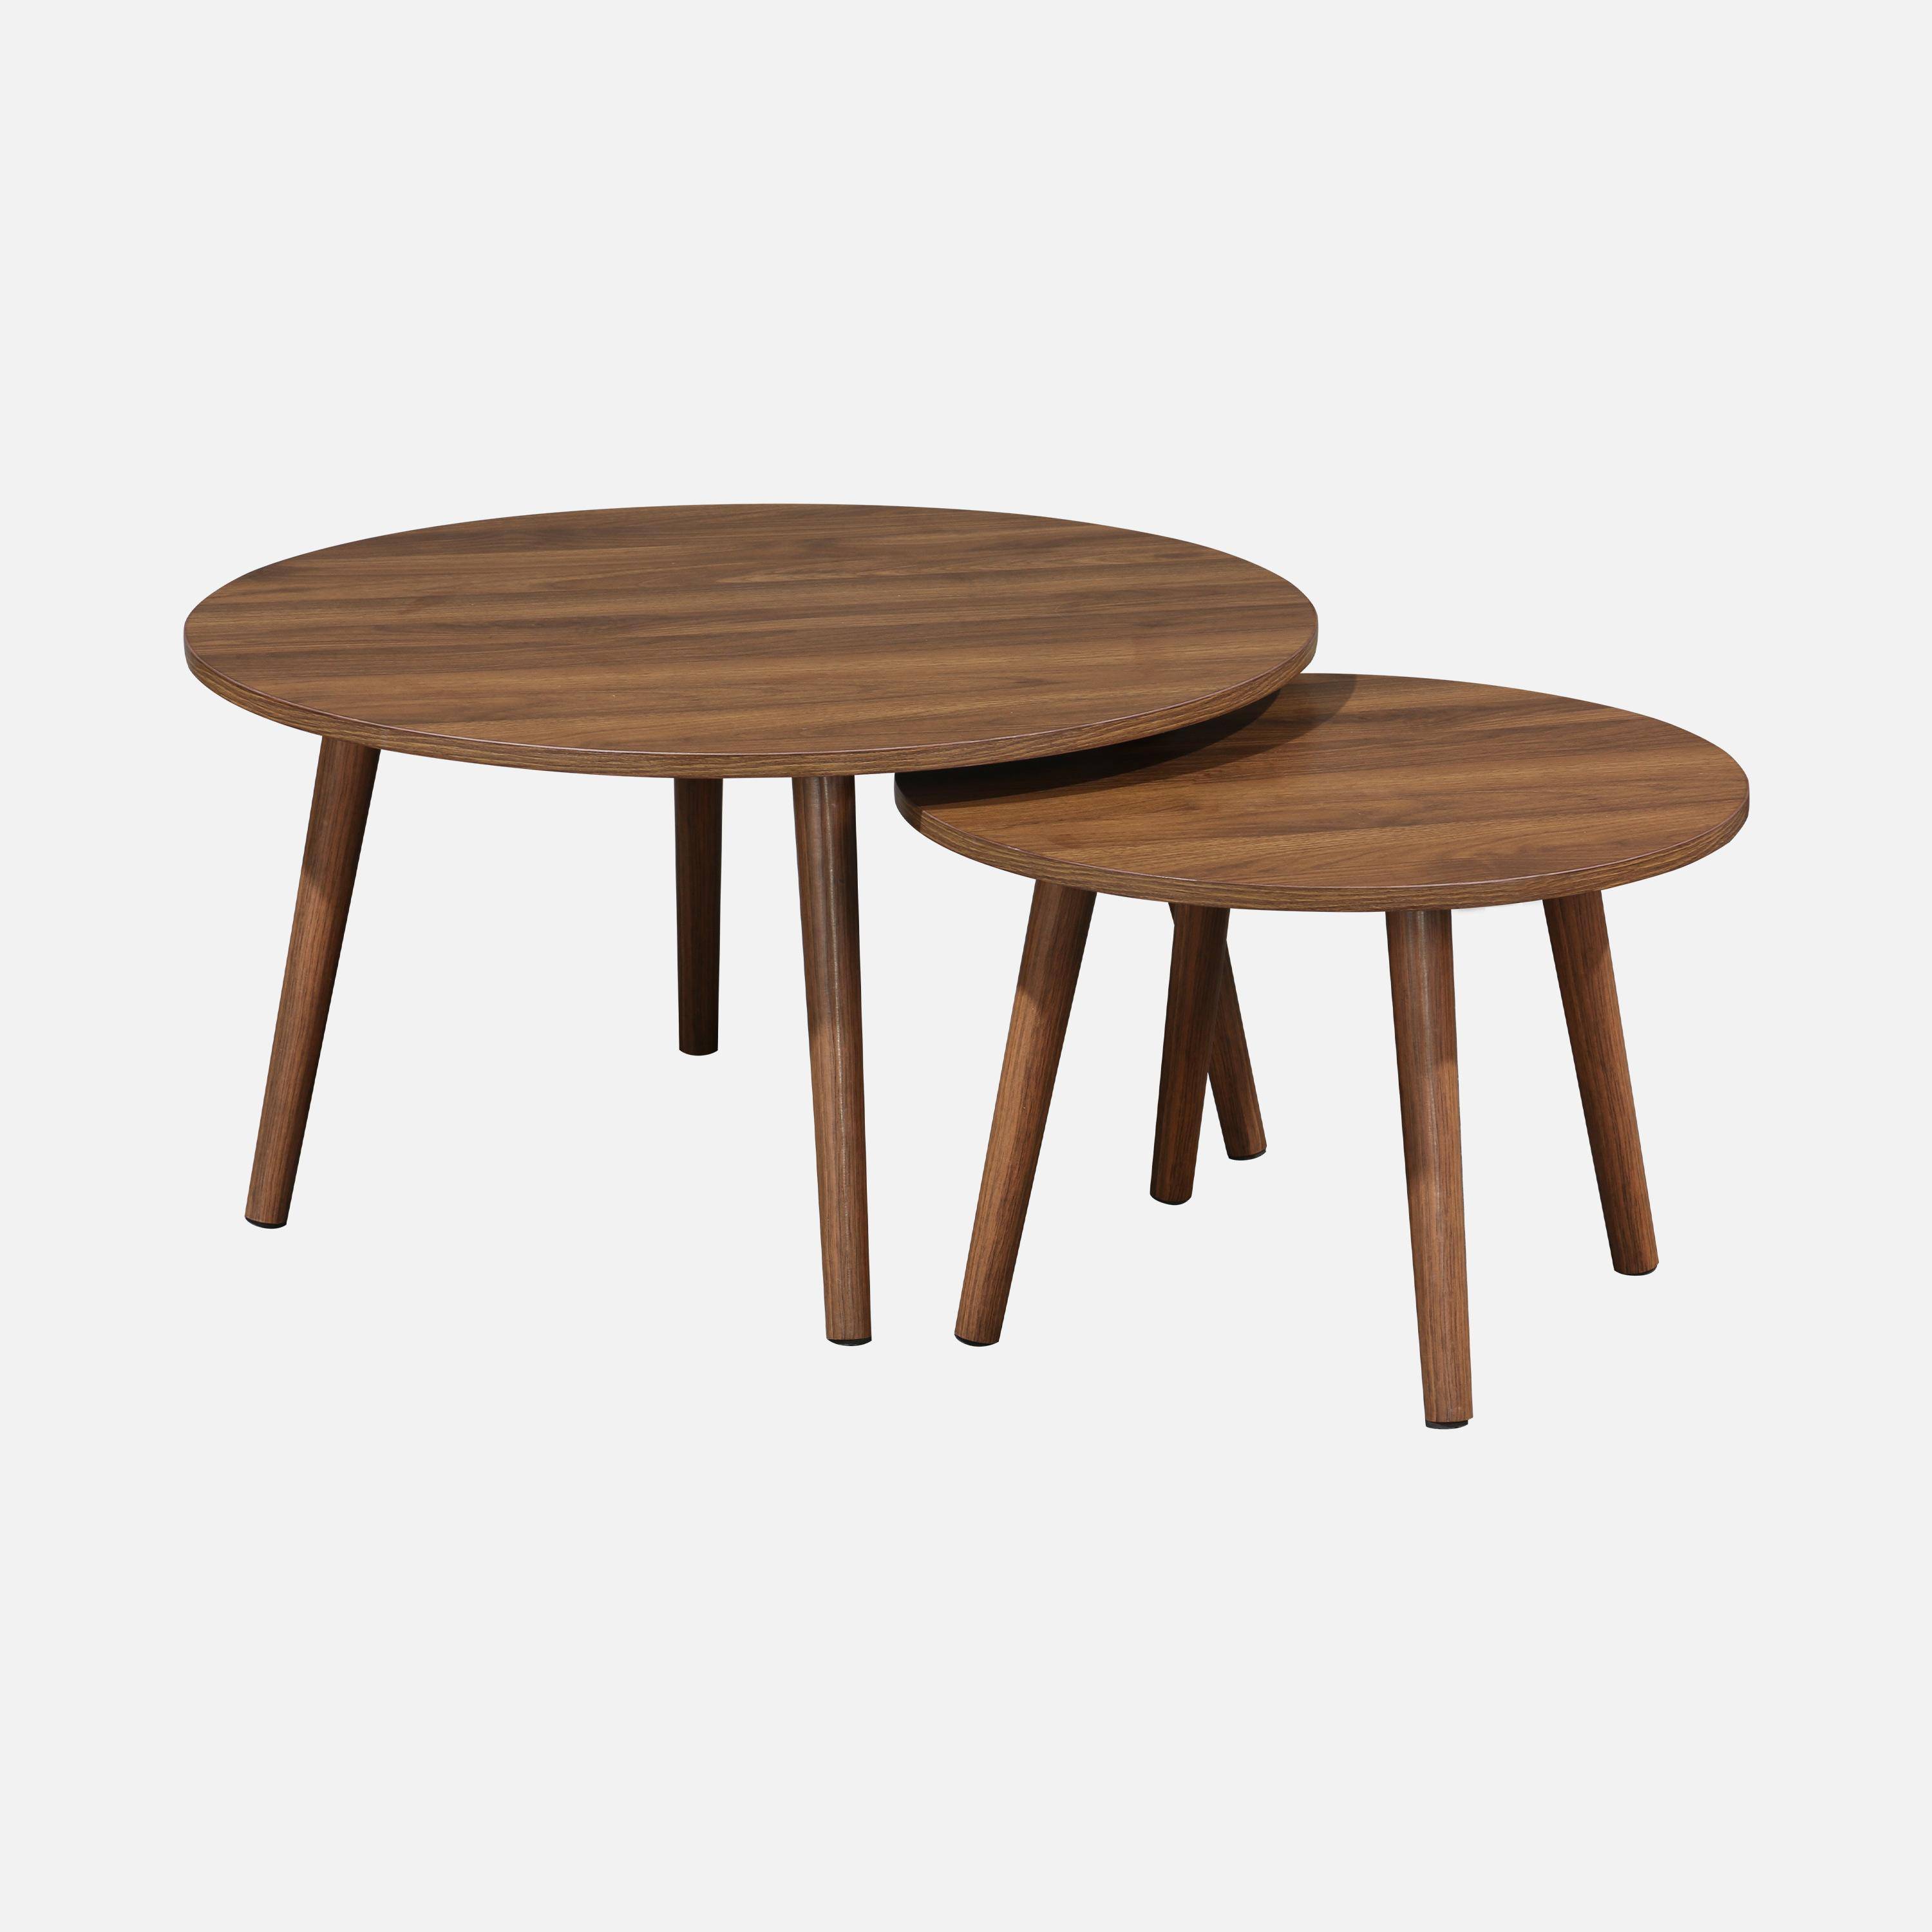 Pair of walnut wood-effect nesting coffee tables, 70x70x38cm & 50x50x34cm, Nepal Photo5